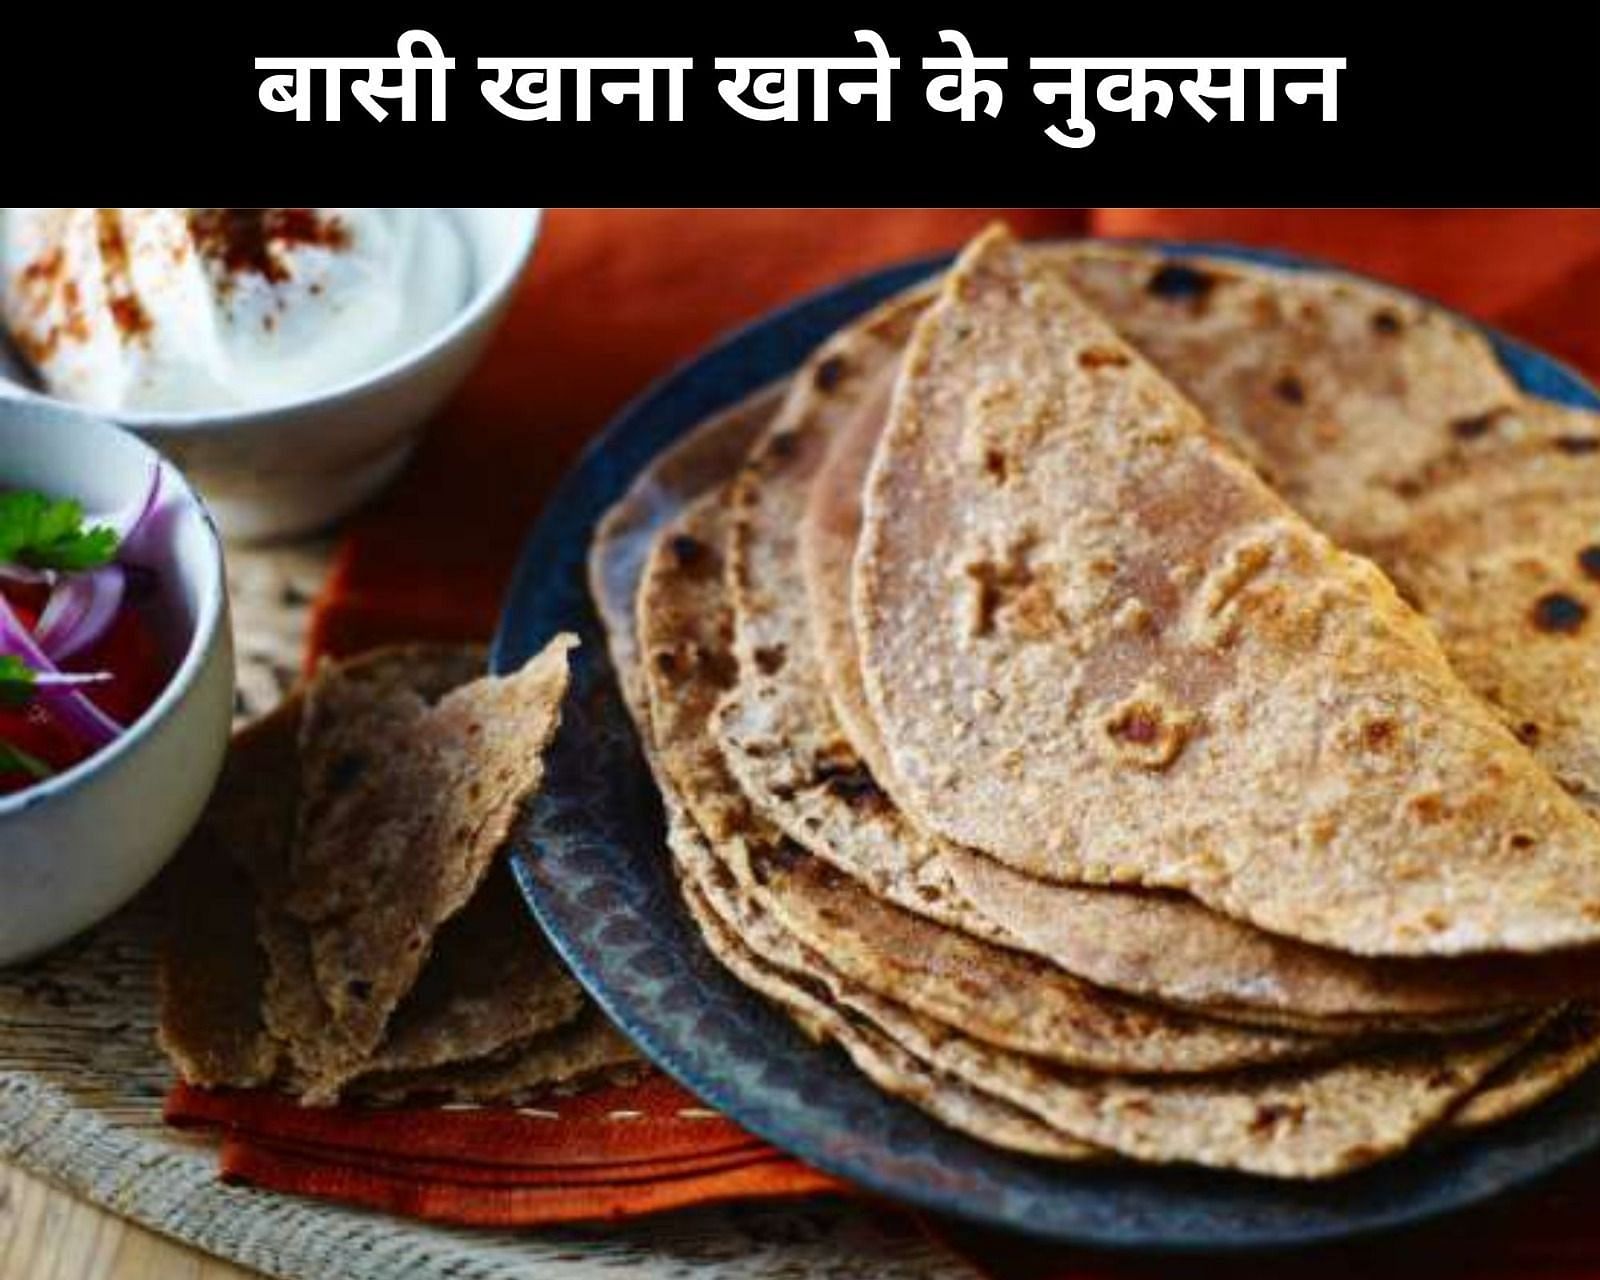 बासी खाना खाने के नुकसान  (फोटो - sportskeeda hindi)